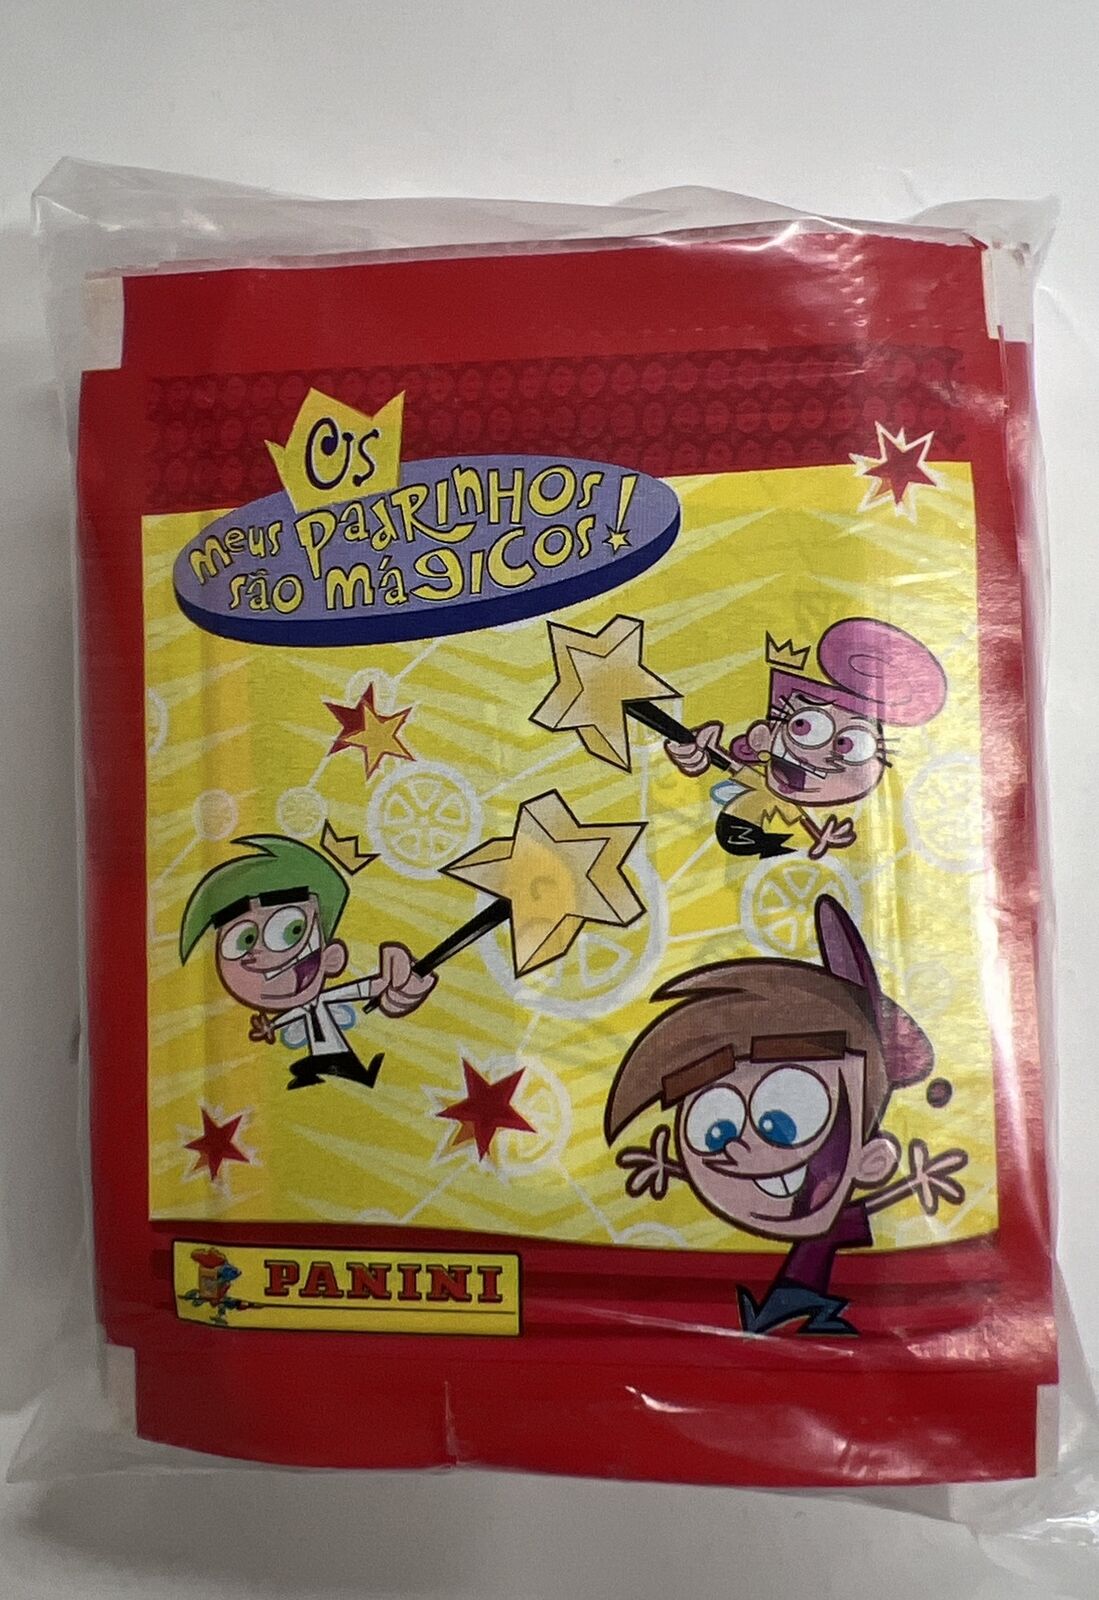 Nickelodeon The Fairly Odd Parents Italian Panini Stickers 50 Packs 2003-2004